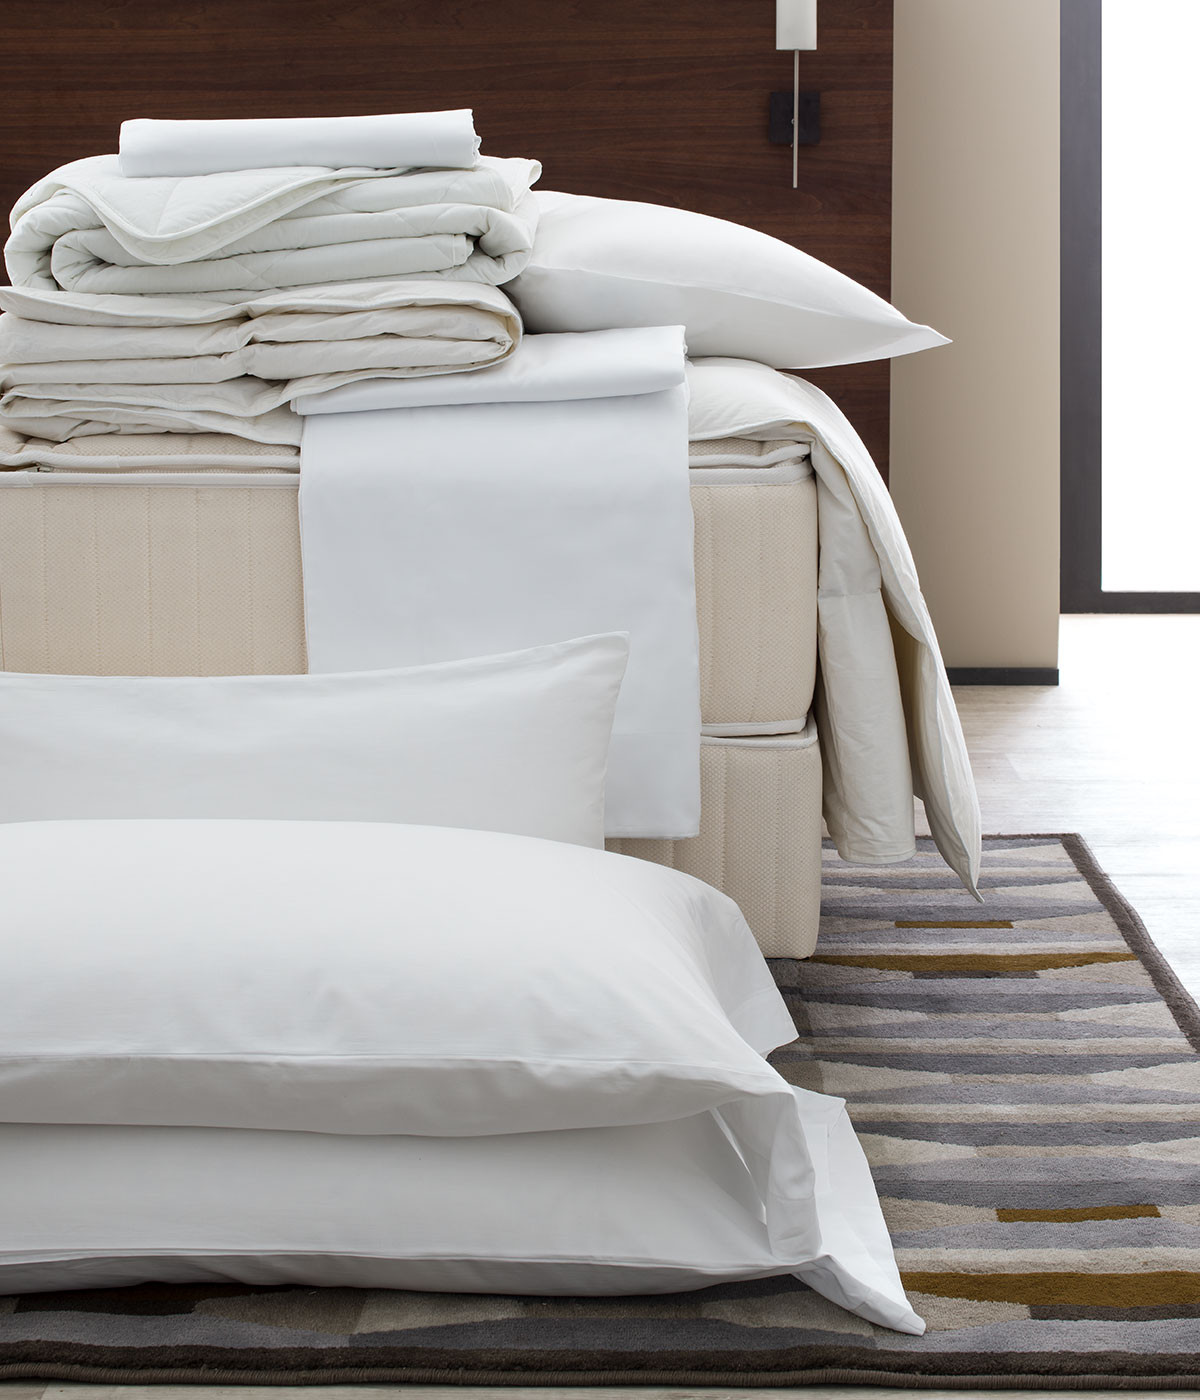 Bed & Bedding Set | Shop Five-Star Hotel Bedding, Sheets ...